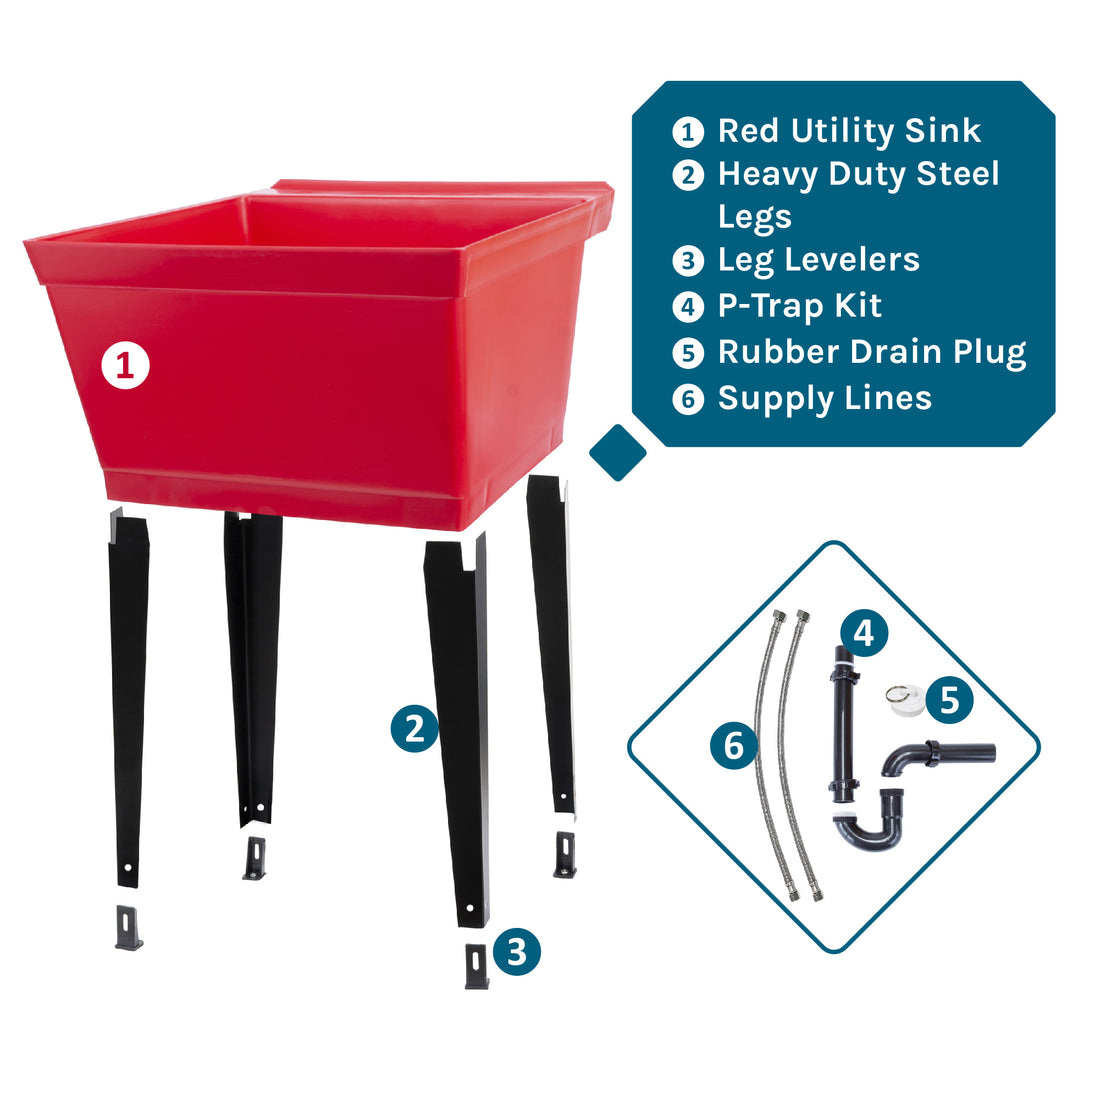 Tehila Standard Freestanding Red Utility Sink with Black Legs, Water Supply Lines Included - Utility sinks vanites Tehila